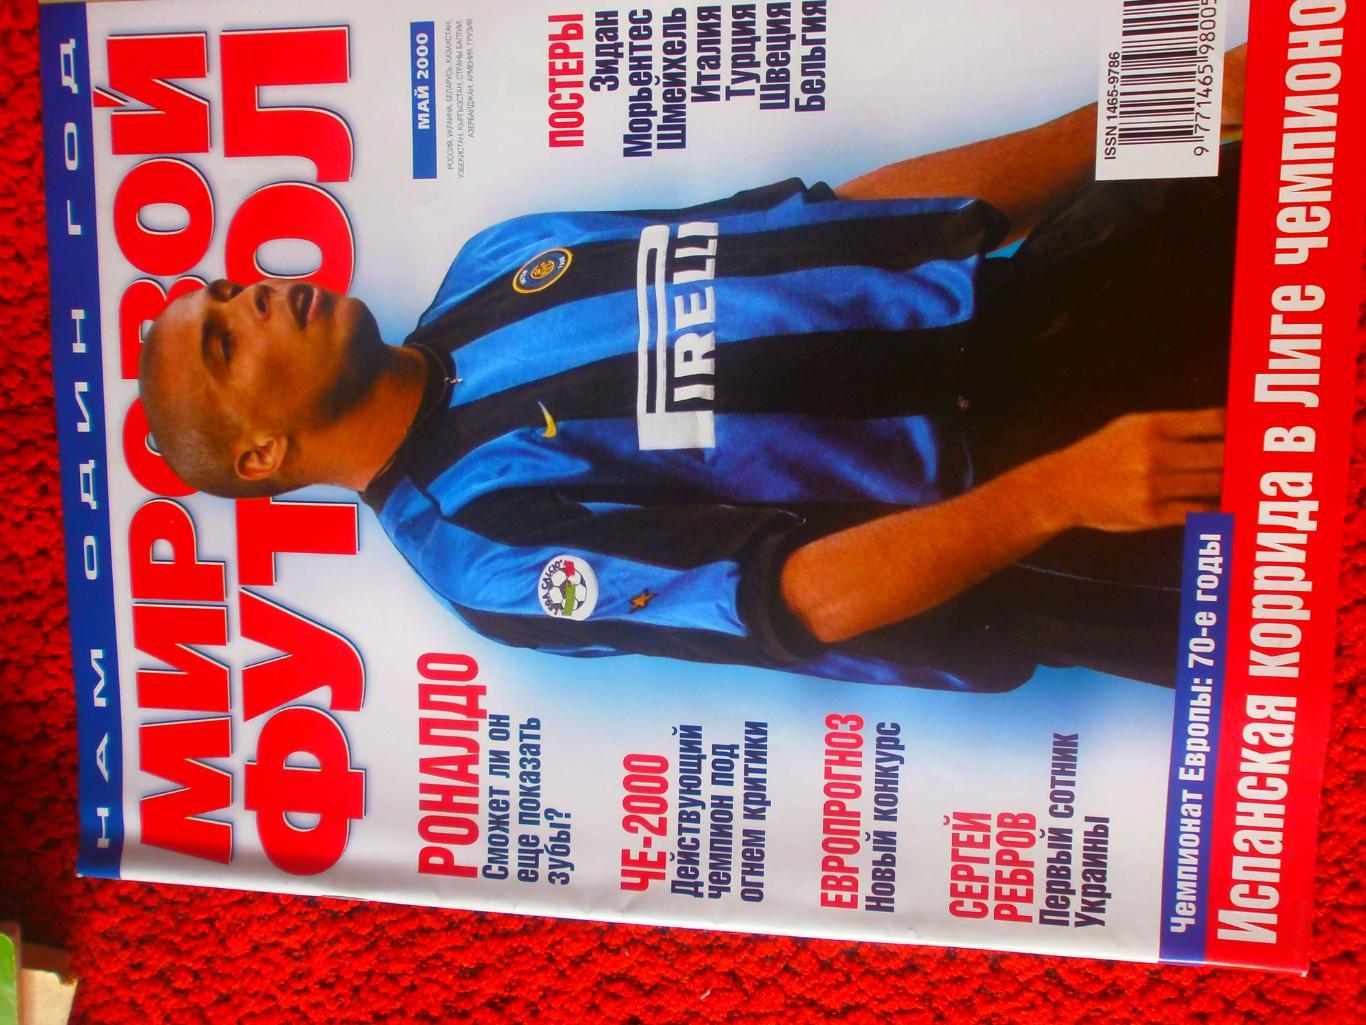 Журнал Мировой футбол май 2000г. Есть постеры